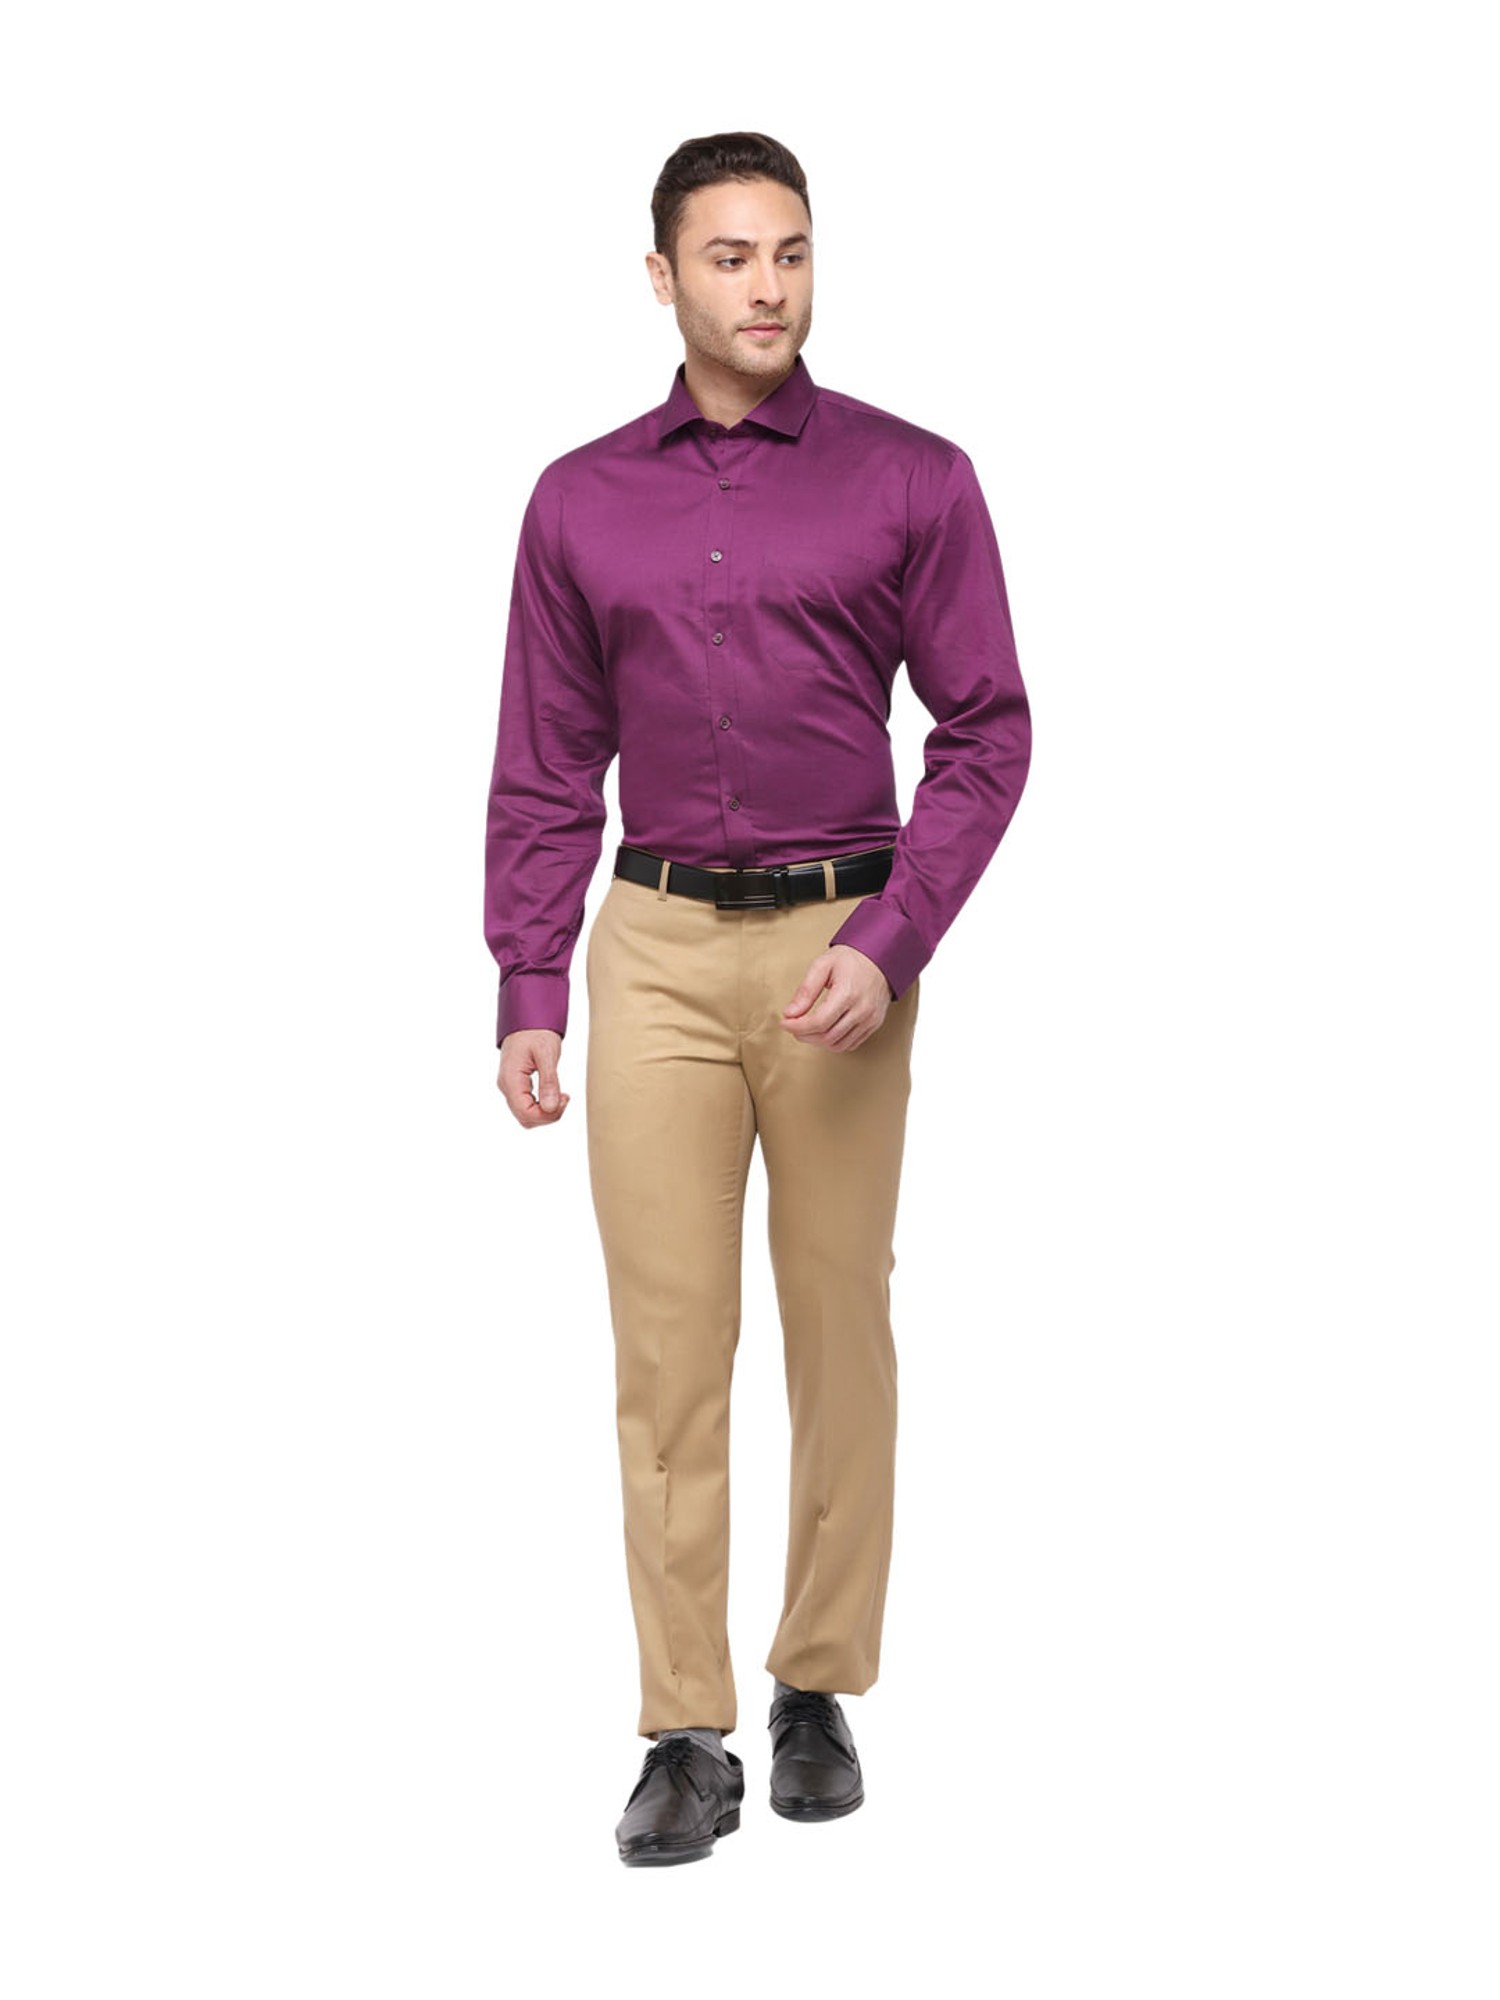 ARROW Men Solid Formal Purple Shirt  Buy ARROW Men Solid Formal Purple  Shirt Online at Best Prices in India  Flipkartcom